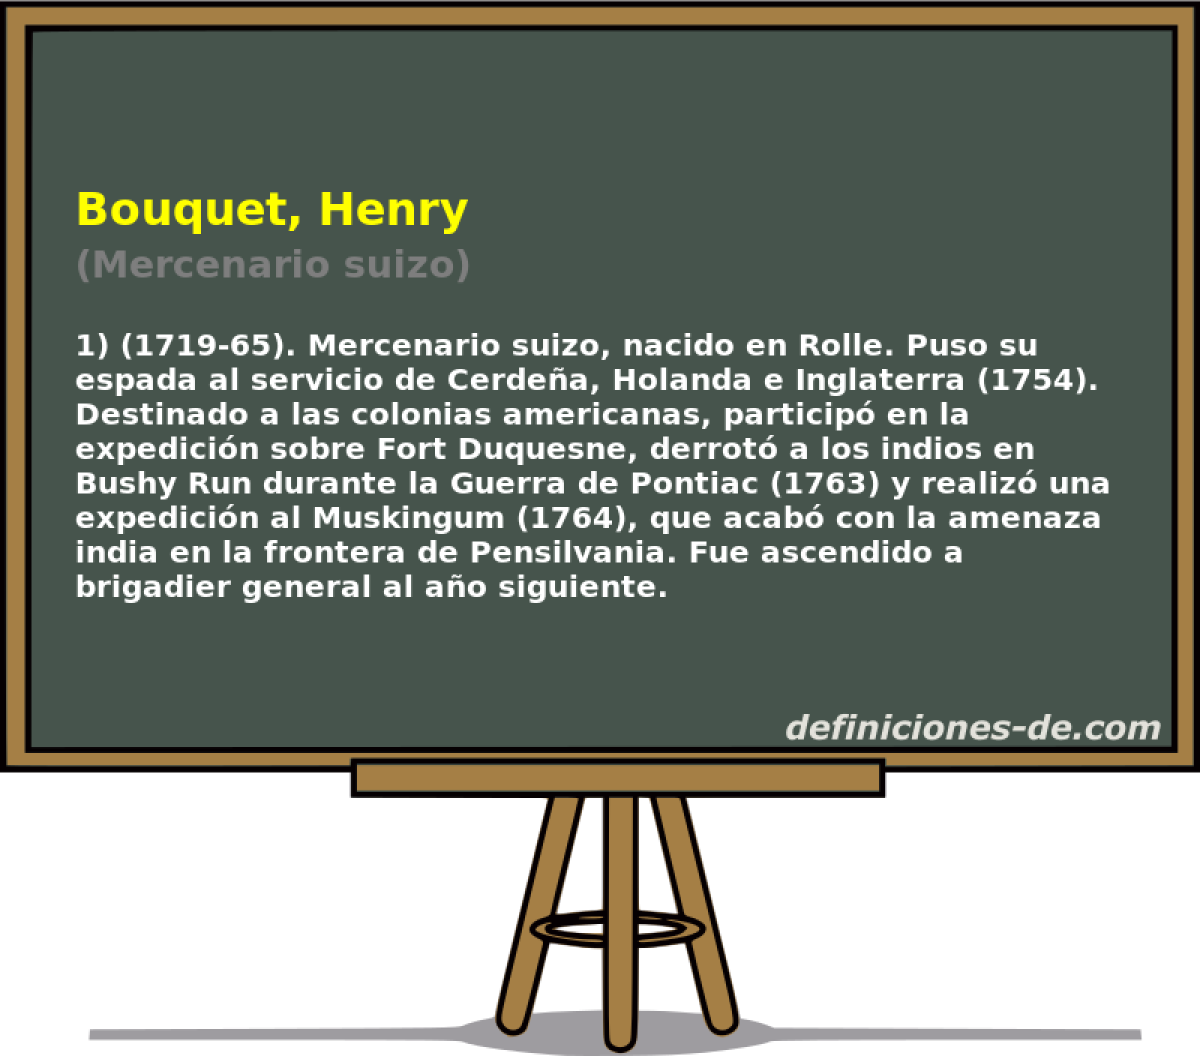 Bouquet, Henry (Mercenario suizo)